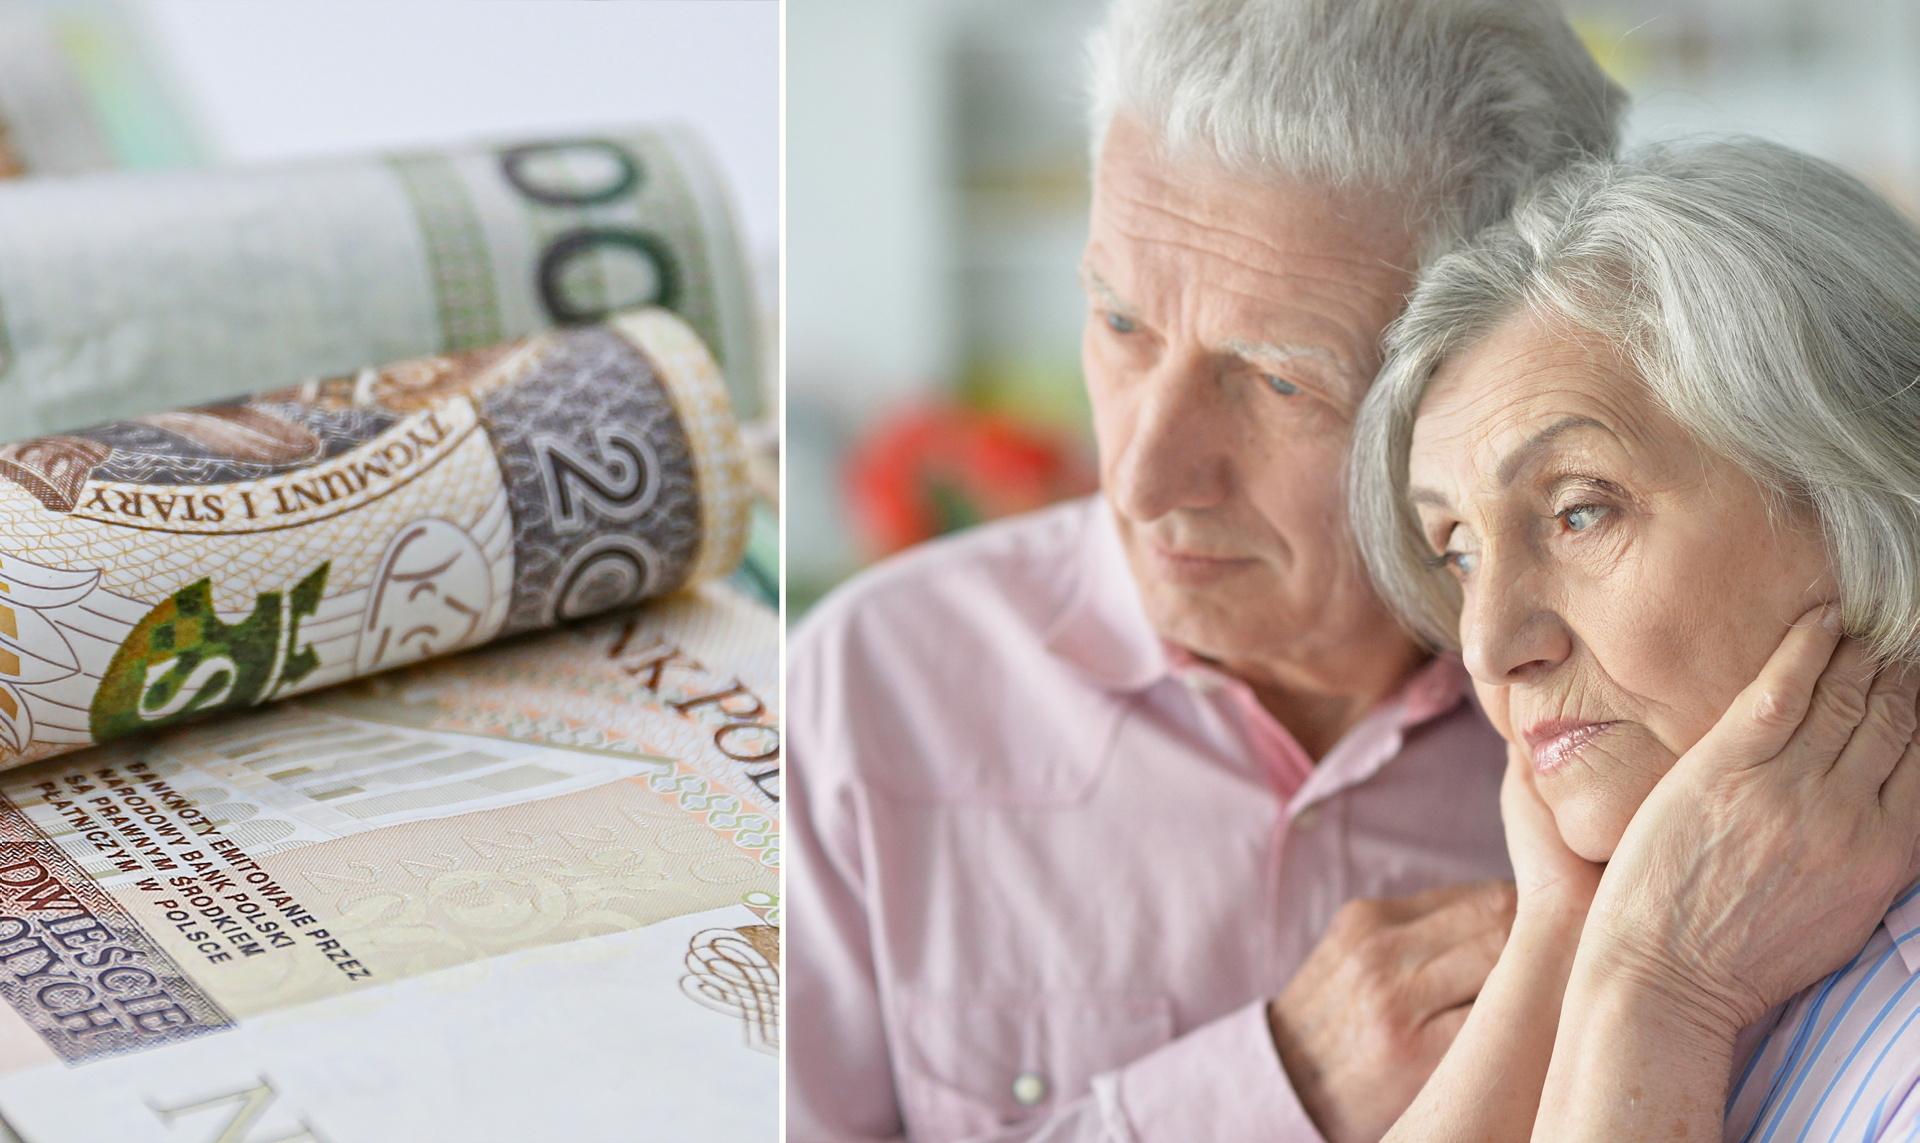 Los pensionistas están decepcionados por la segunda indexación de las pensiones.  ¡Noticias impactantes!  Esto va a ser una pesadilla – Super Express